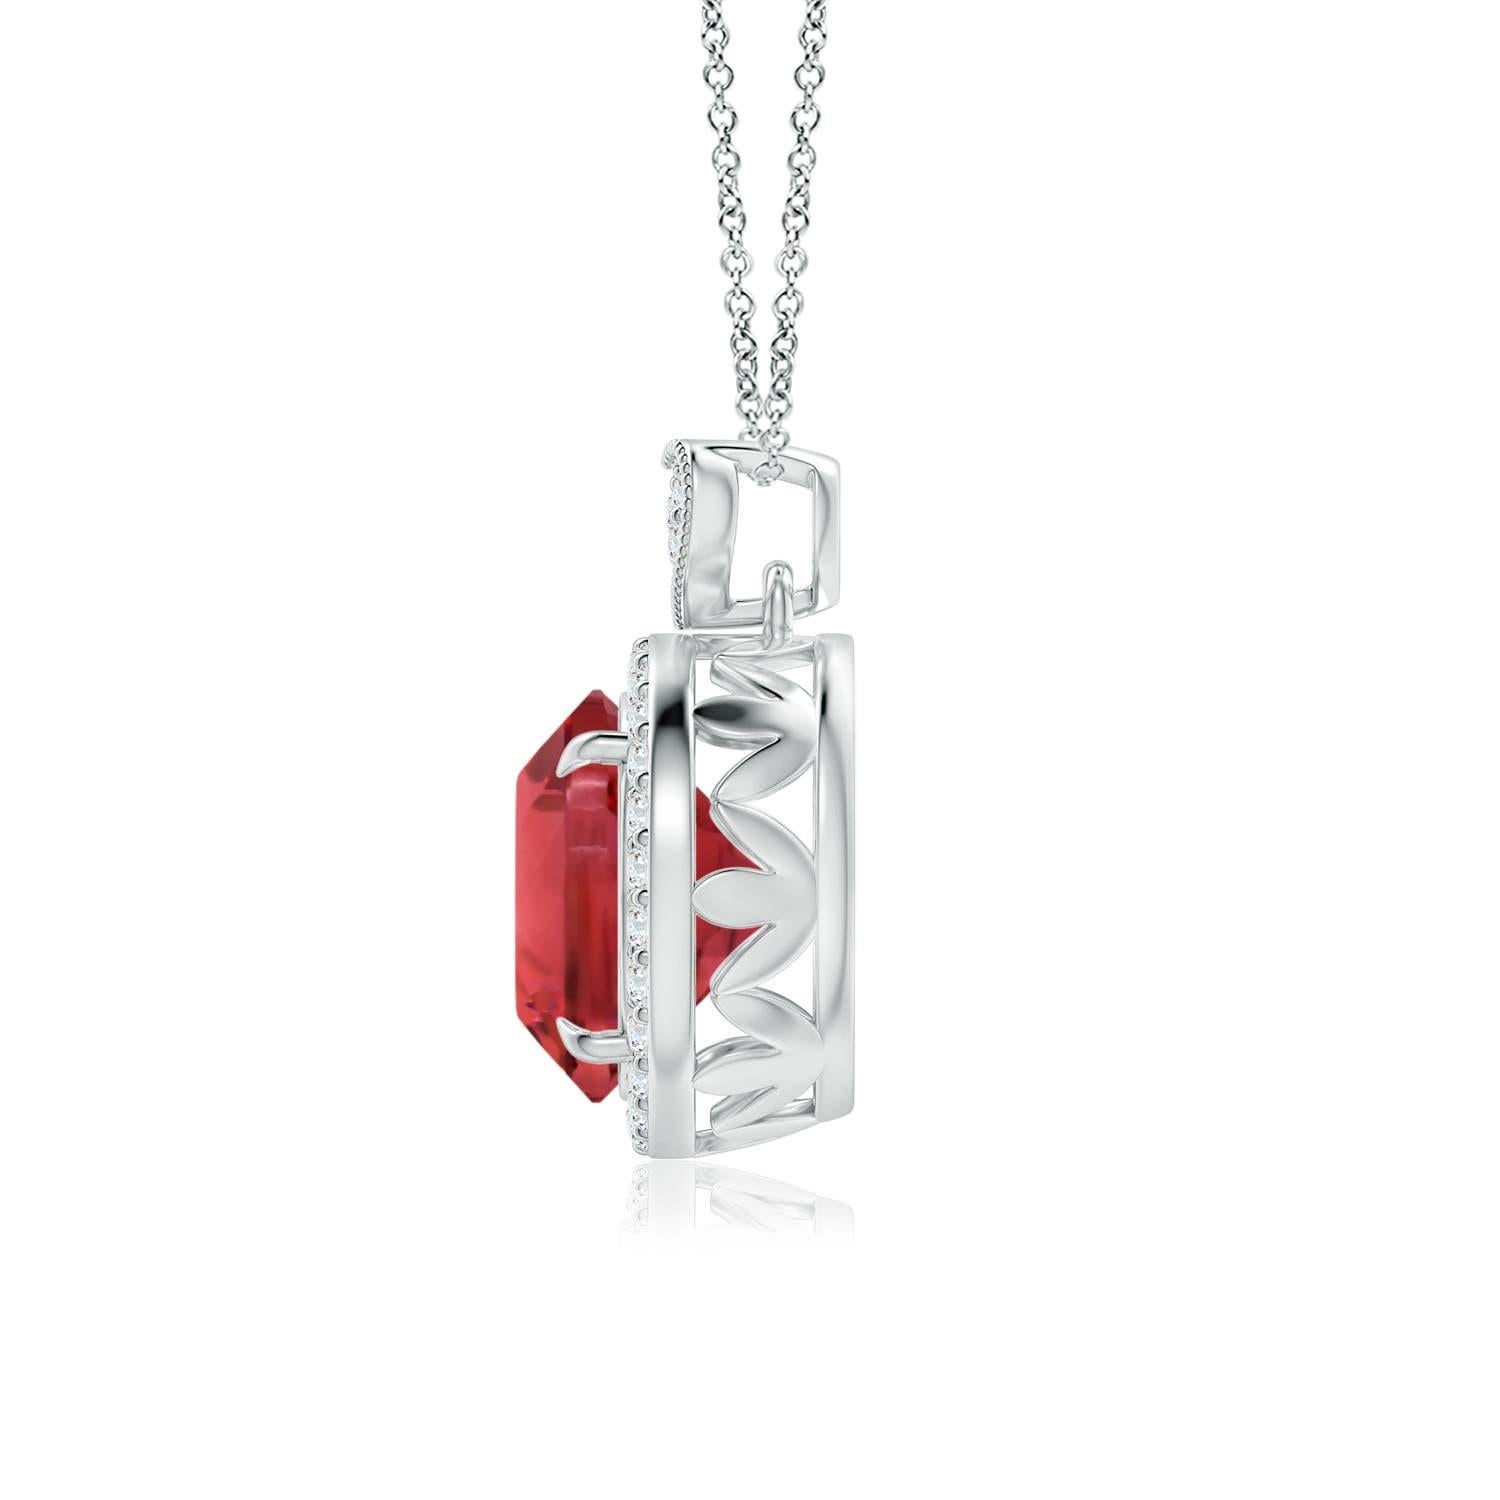 Embrassez votre côté romantique avec ce charmant pendentif en tourmaline rose, réalisé en or blanc 18 carats. La tourmaline rose certifiée par le GIA est sertie dans un halo de diamants étincelants. Il est surmonté d'une balle en forme de cœur